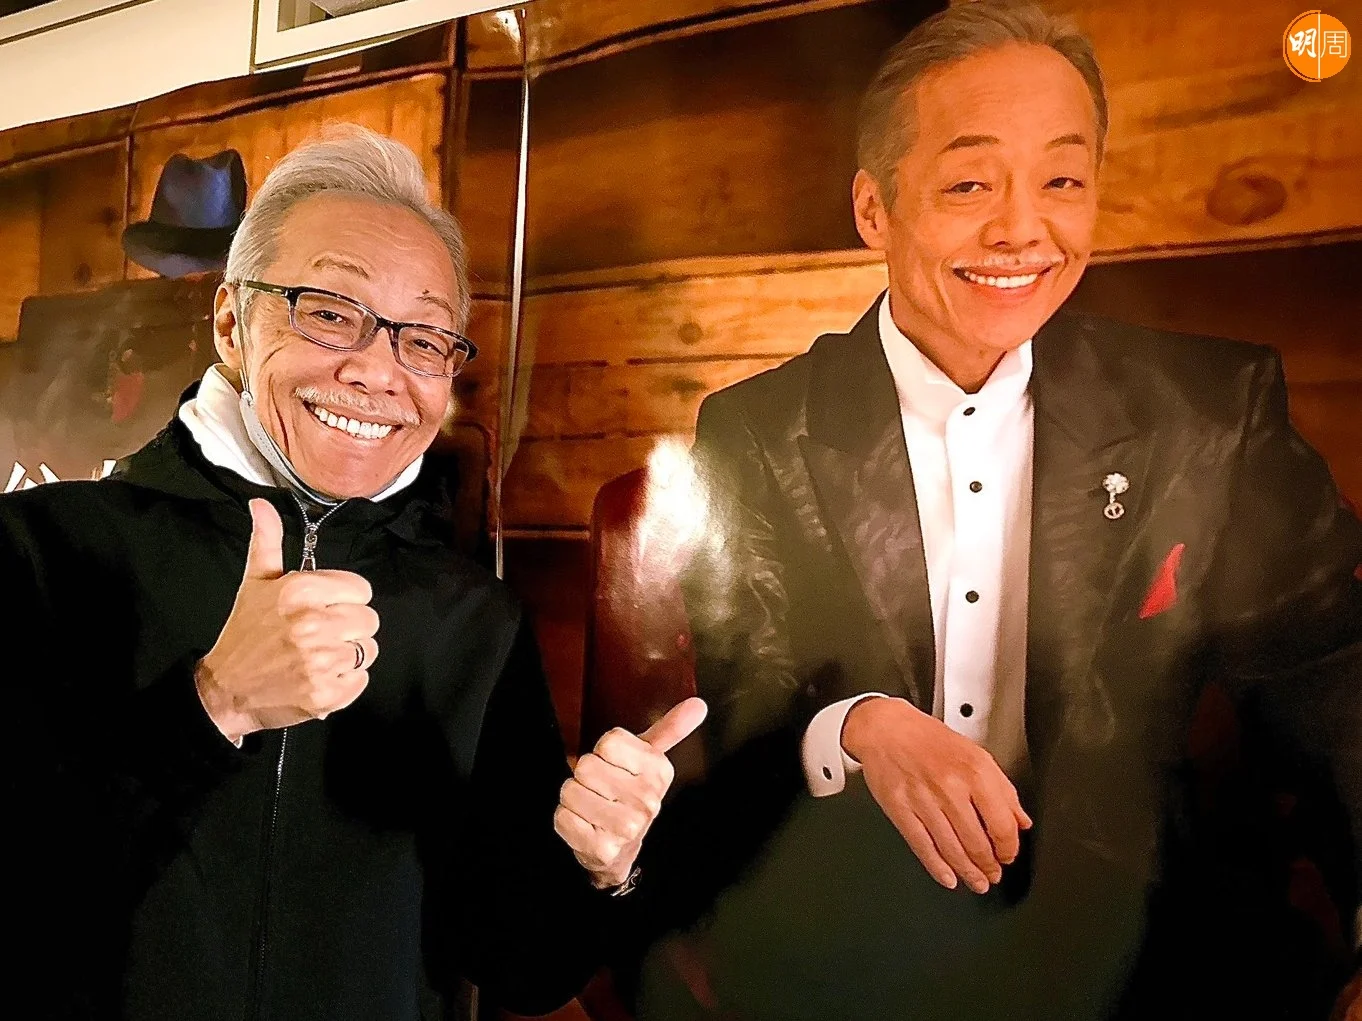 去年12月11日是谷村新司74歲生日，經理人公司當時在Twitter發放照片，讓大家向他祝賀，可是成為他最後一次露面的照片。